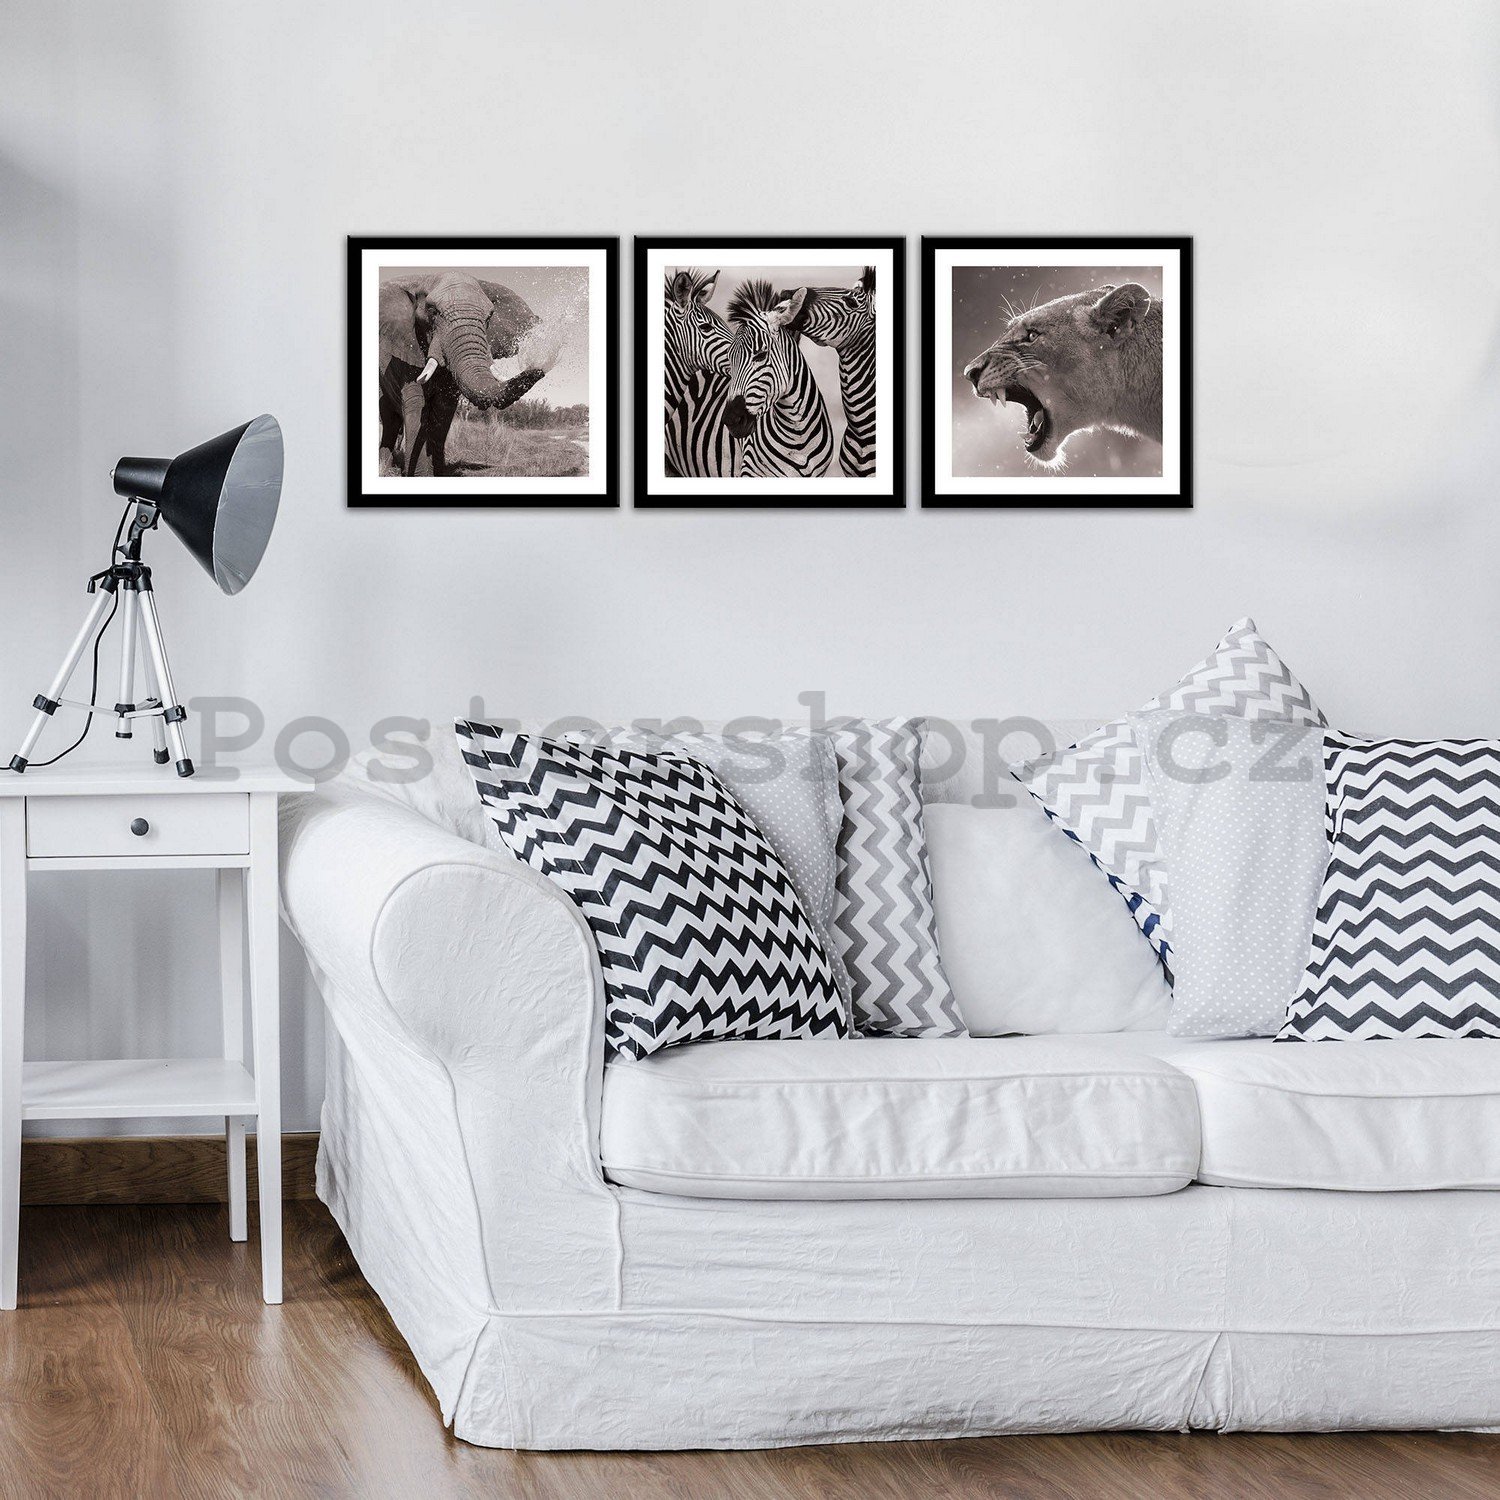 Obraz na plátně: Slon, Zebry a Lvice - set 3ks 25x25cm